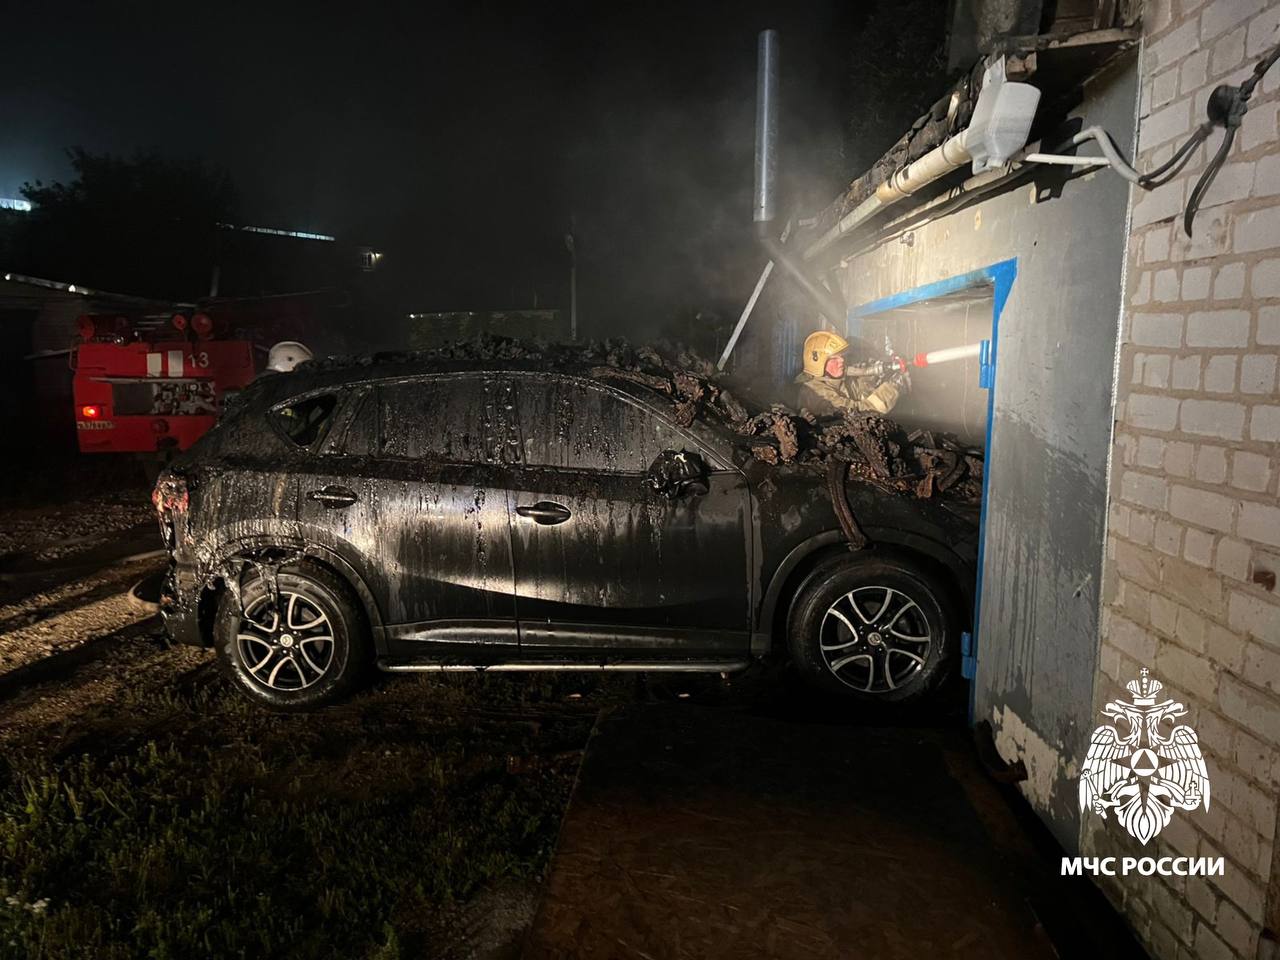 Пожарные спасли автомобиль из горящего гаража в Тверской области 